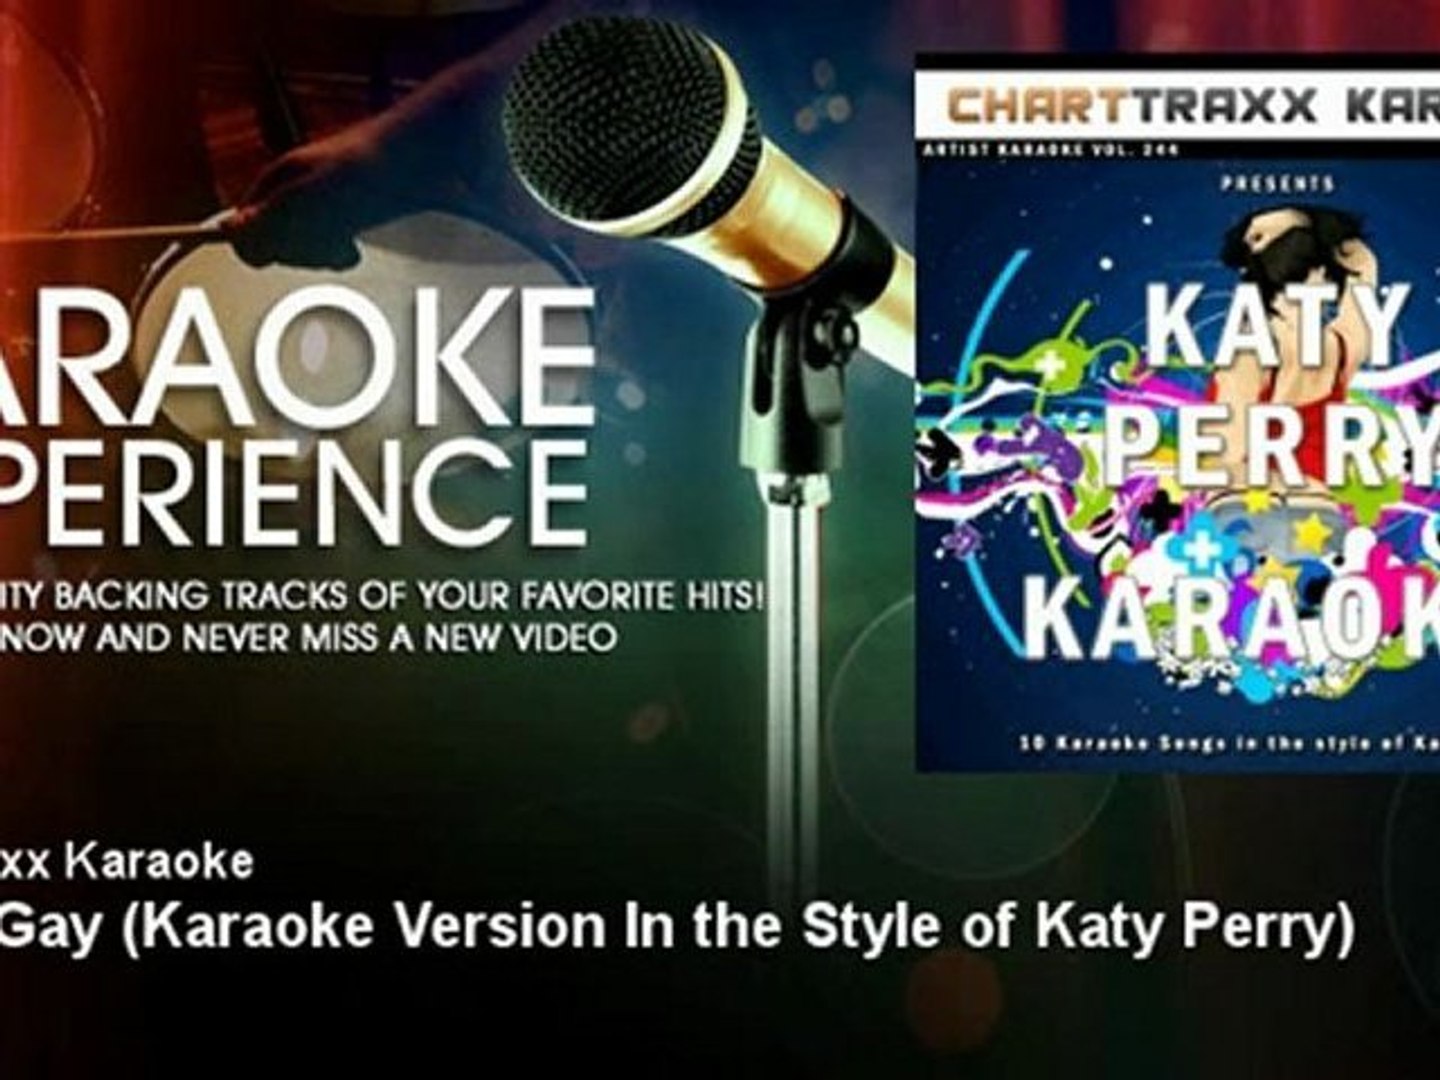 Charttraxx Karaoke - Ur So Gay - Karaoke Version In the Style of Katy Perry - KaraokeExperience